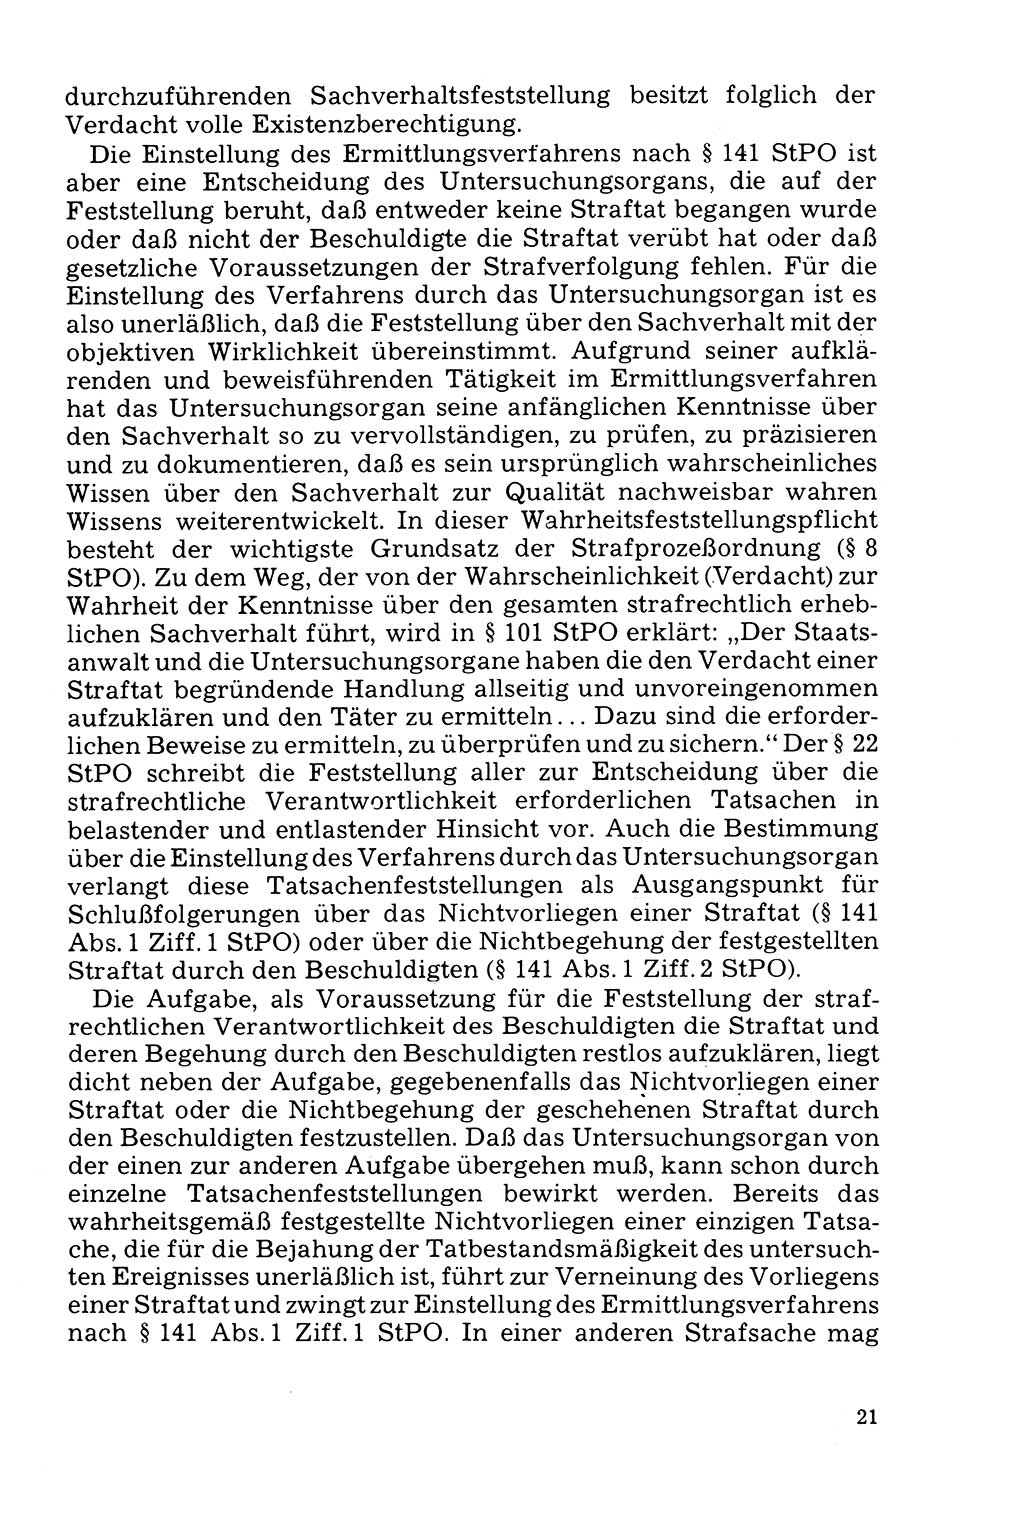 Der Abschluß des Ermittlungsverfahrens [Deutsche Demokratische Republik (DDR)] 1978, Seite 21 (Abschl. EV DDR 1978, S. 21)